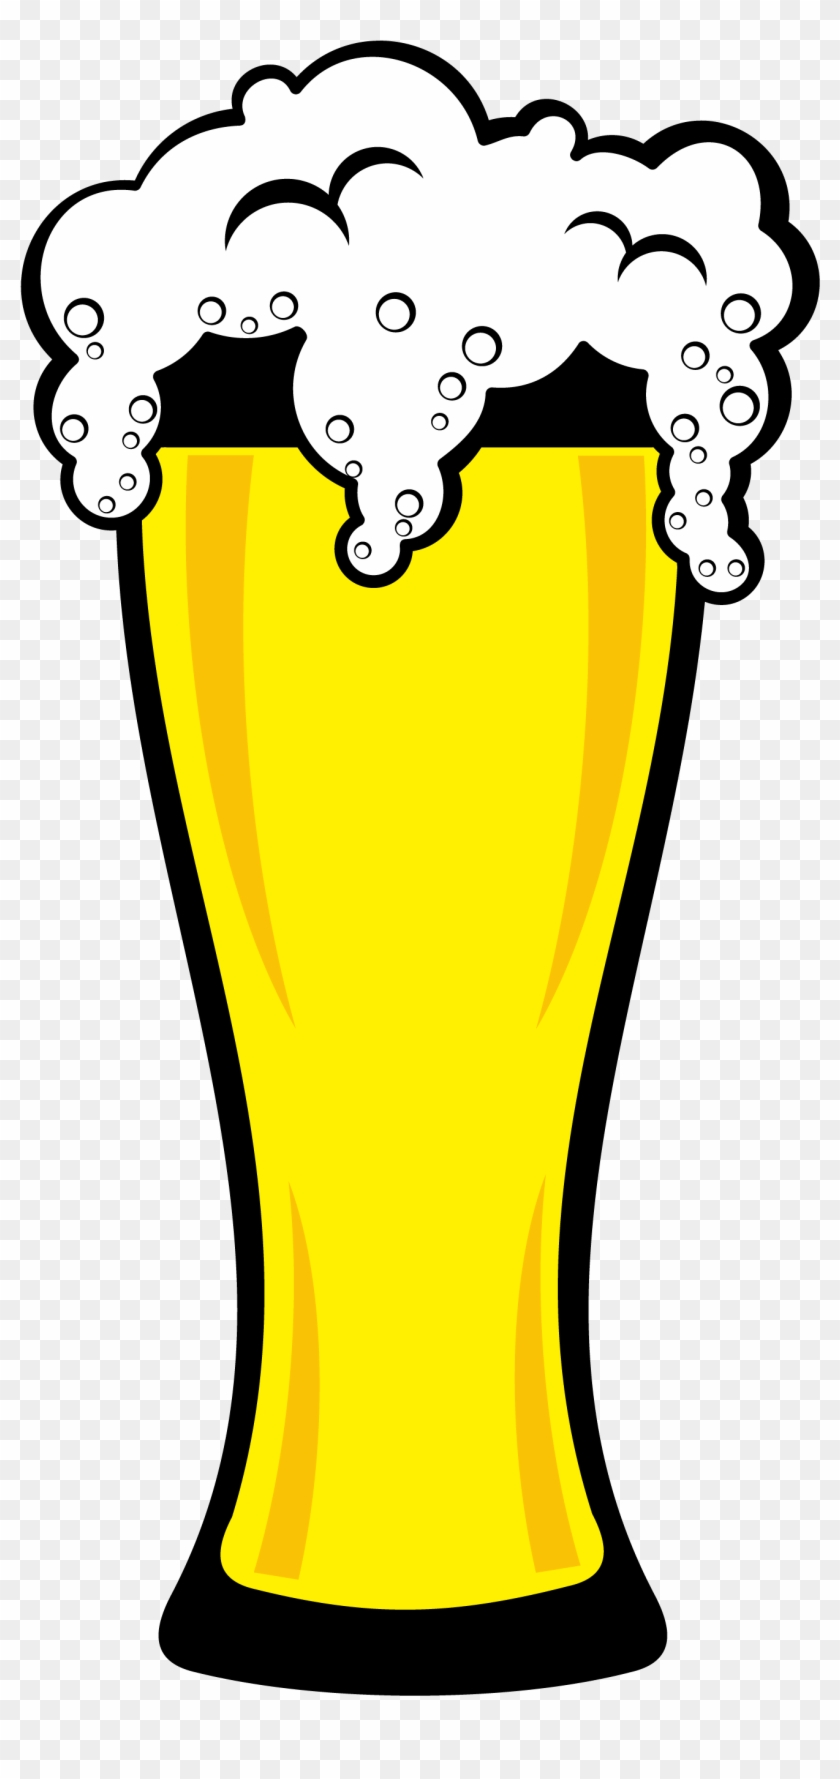 Root Beer Beer Glasses Clip Art - Root Beer Beer Glasses Clip Art #330386